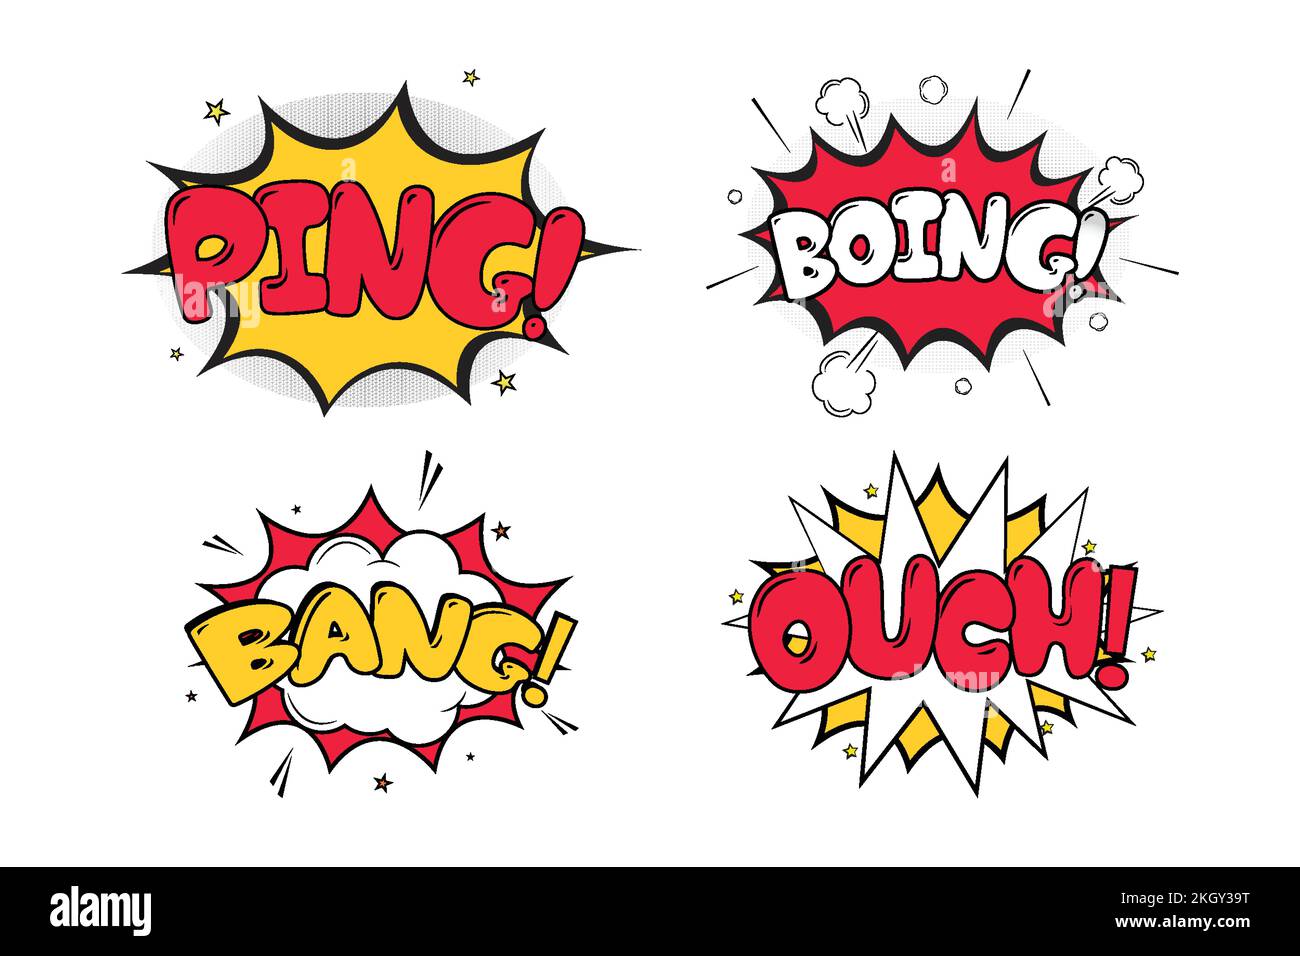 Ping-Boing-Comic mit weißen, roten und gelben Farben. Autsch Bang Comic-Explosion in Gelb, Weiß und Rot. Comic-Burst mit farbenfrohem Clan Stock Vektor